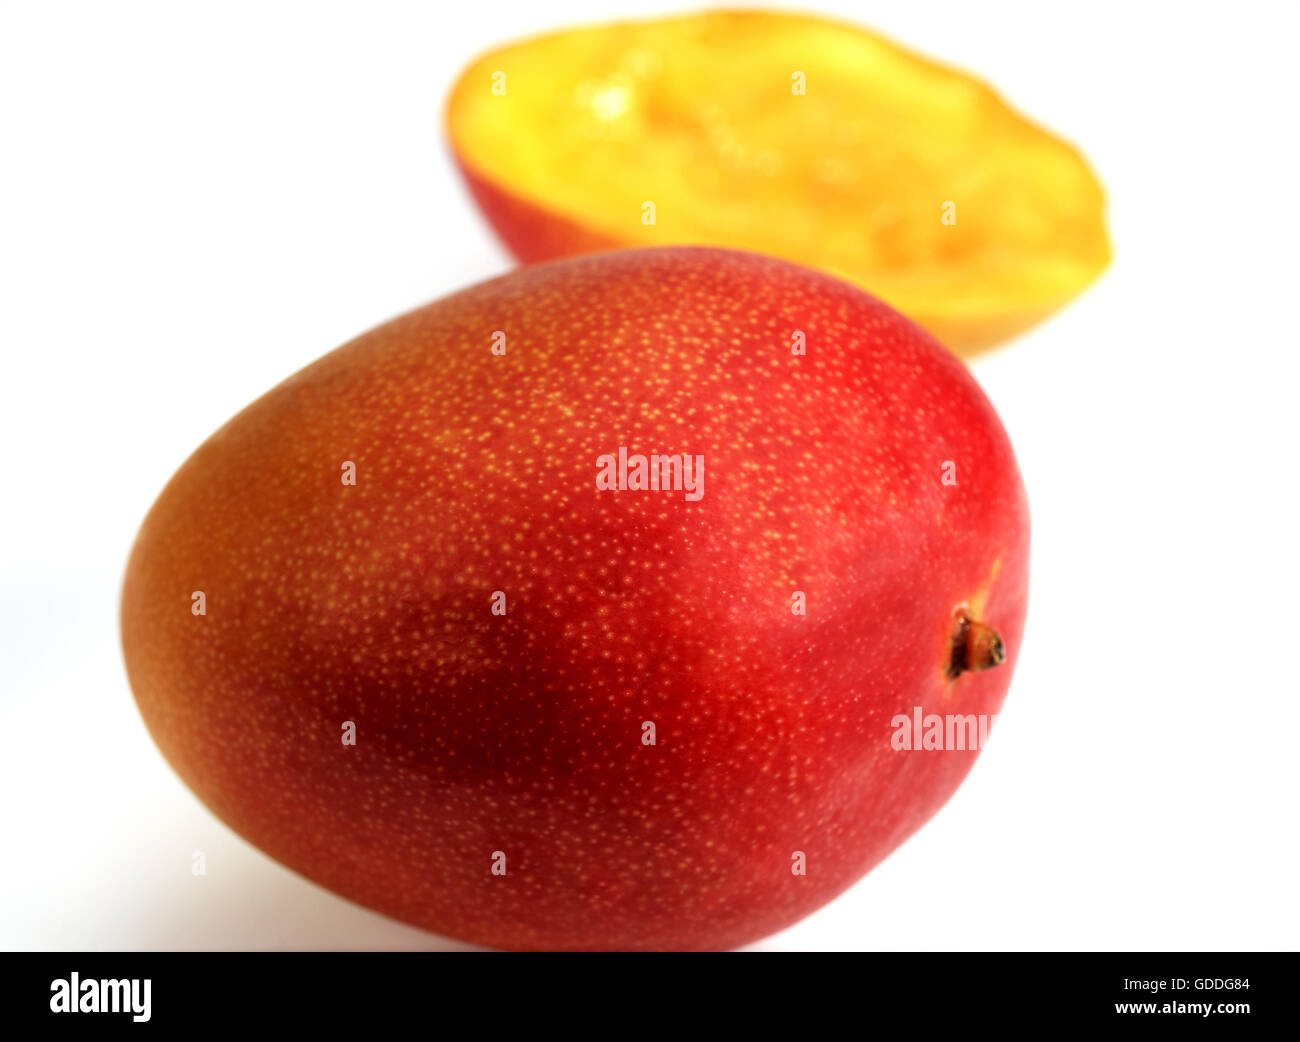 Mango, mangifera indica, Fruits against White Background Stock Photo